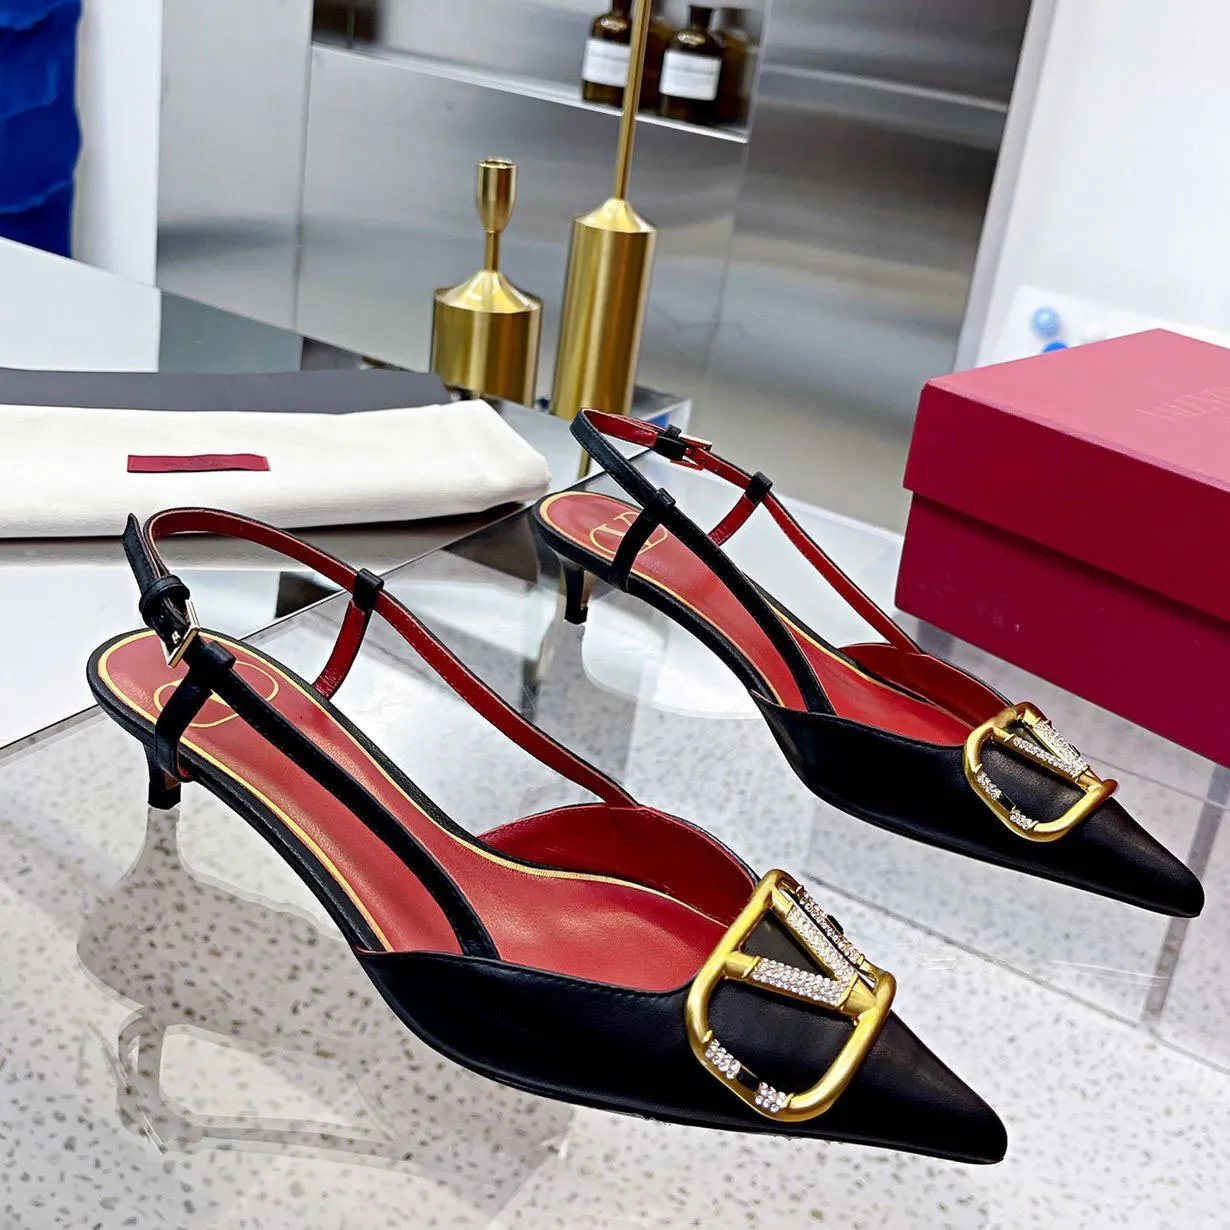 Kadın Ayakkabı Tasarımcı Sandalet Terlik Yüksek Topuklu ayakkabılar Marka Tokası 4cm 6cm 8cm 10cm ince topuklu sivri uçlu siyah çıplak kırmızı dipler ayakkabı tasarımcı ayakkabı 805